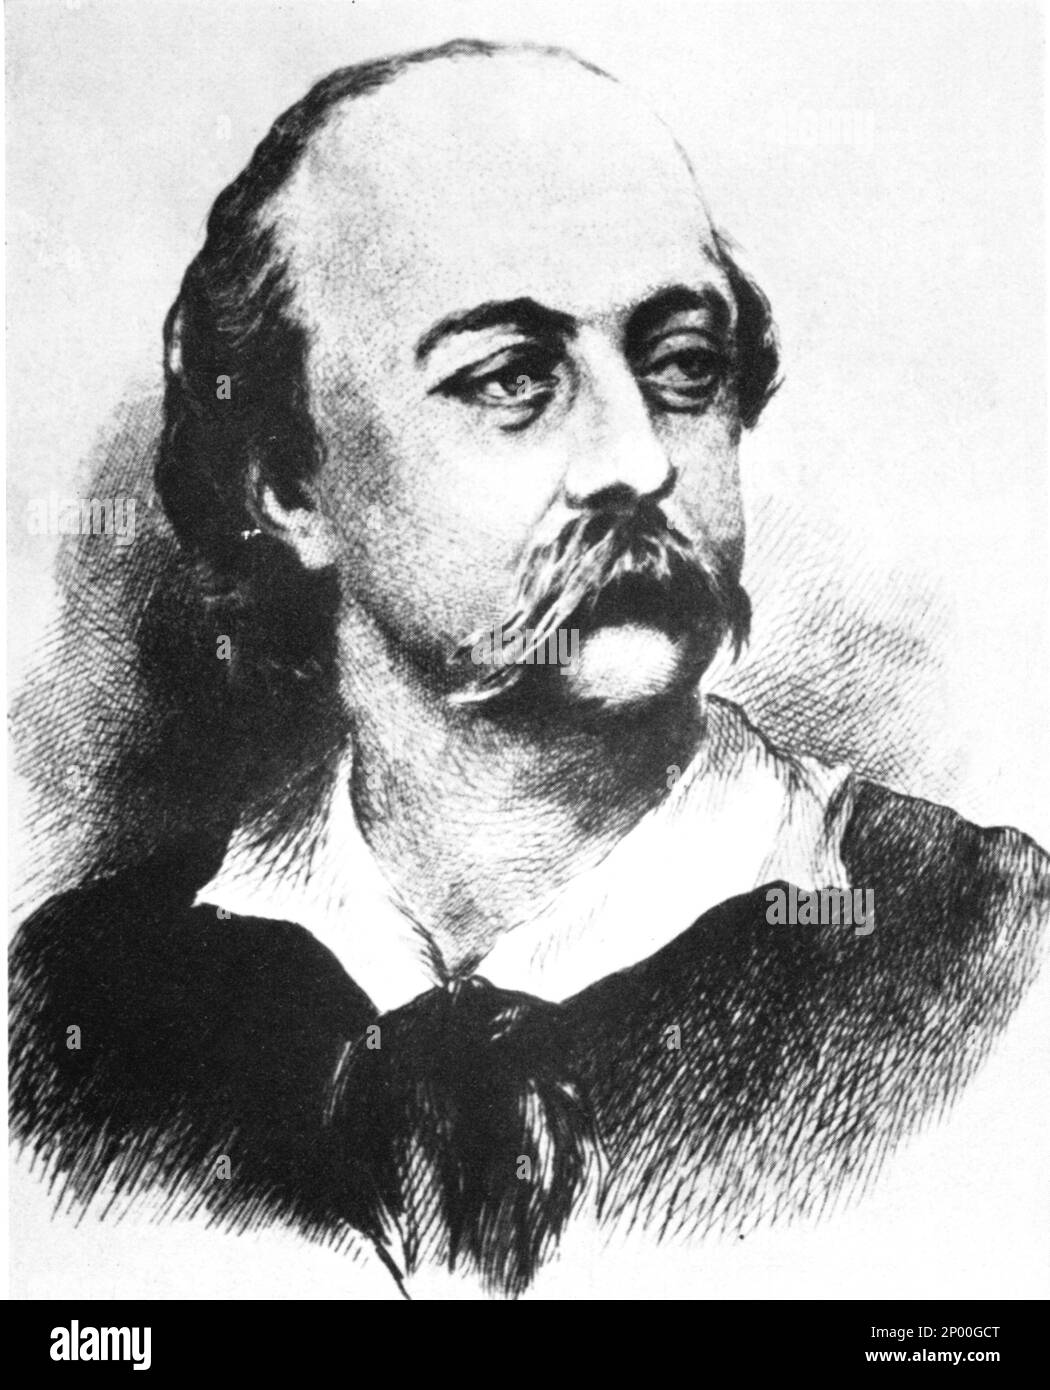 L'écrivain français GUSTAVE FLAUBERT ( 1821 - 1880 ) , auteur de roman MADAME BOVARY ( 1857 ) - SCRITTORE - letterATURA - LITTÉRATURE - ritratto - ROMANTICISMO - ritratto - collier - colletto - letterato - ritratto - incisione - bachigi - moustache - stempiatura - ustemomo piato - timbadé au temple --- Archivio GBB Banque D'Images